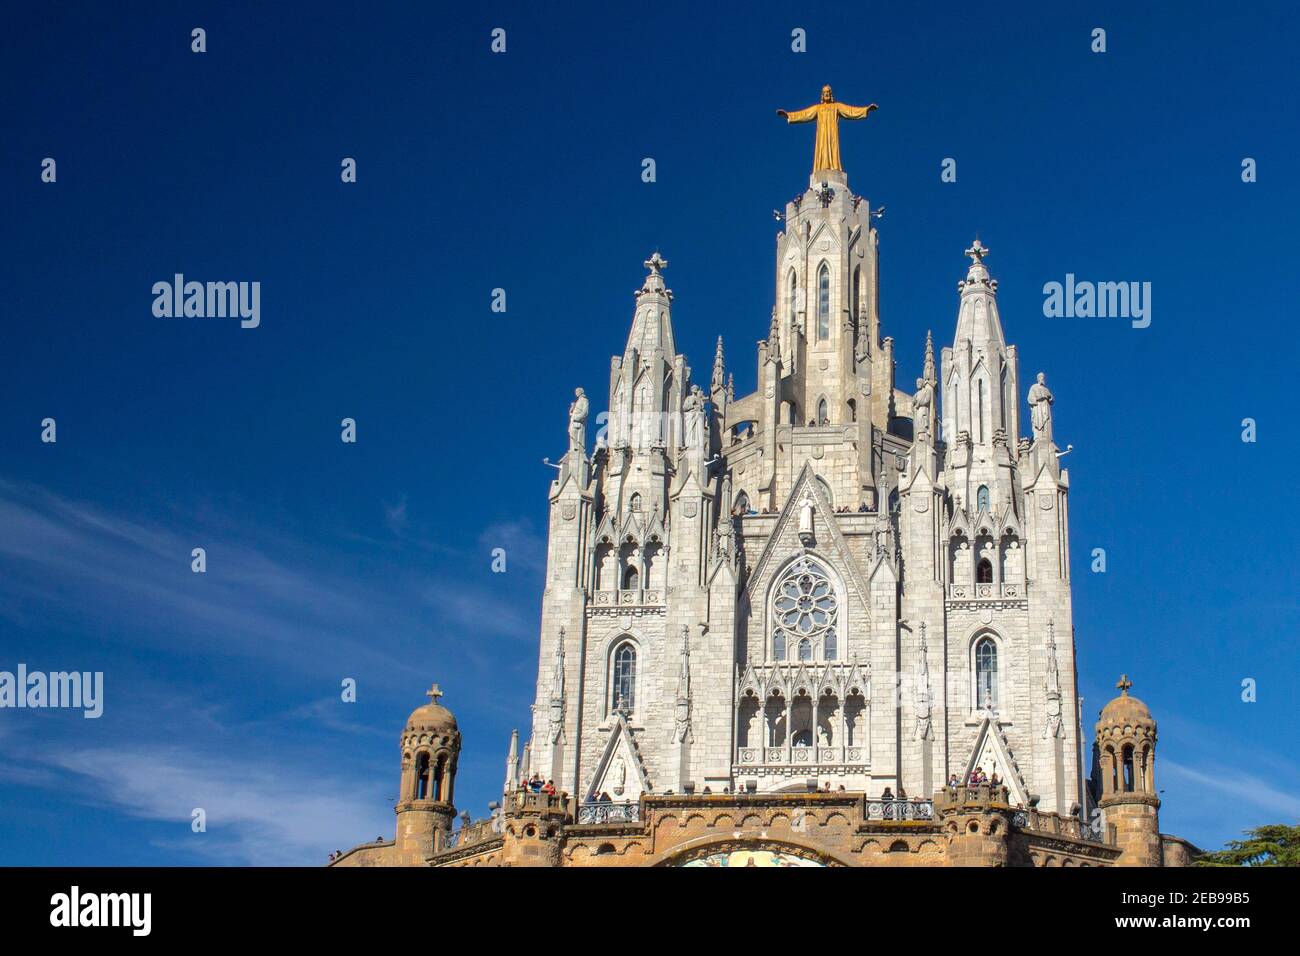 Chiesa di Tibidabo: Un paradiso spirituale in cima a Barcellona, dove la fede incontra la bellezza panoramica, offrendo conforto e vedute mozzafiato Foto Stock